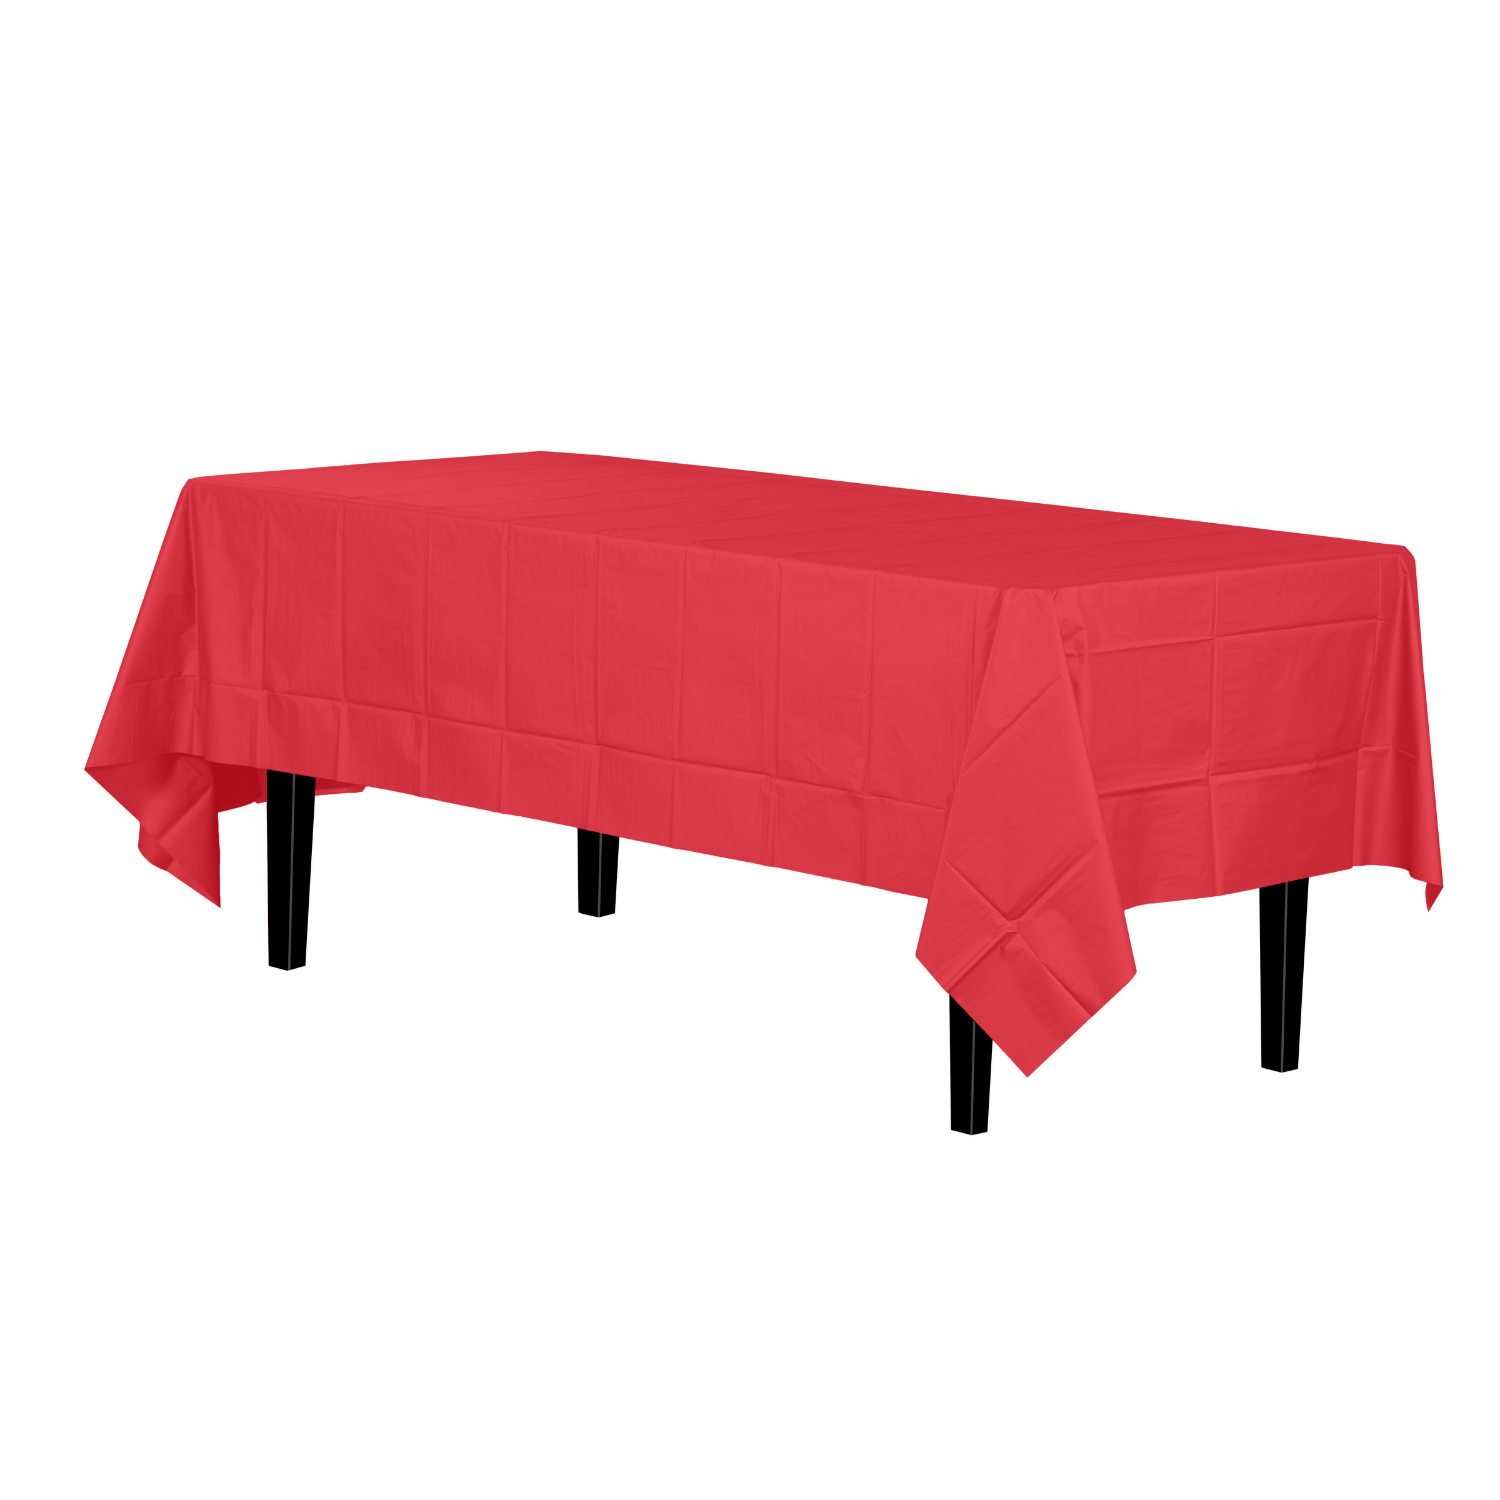 Premium Red Plastic Tablecloth | 96 Count